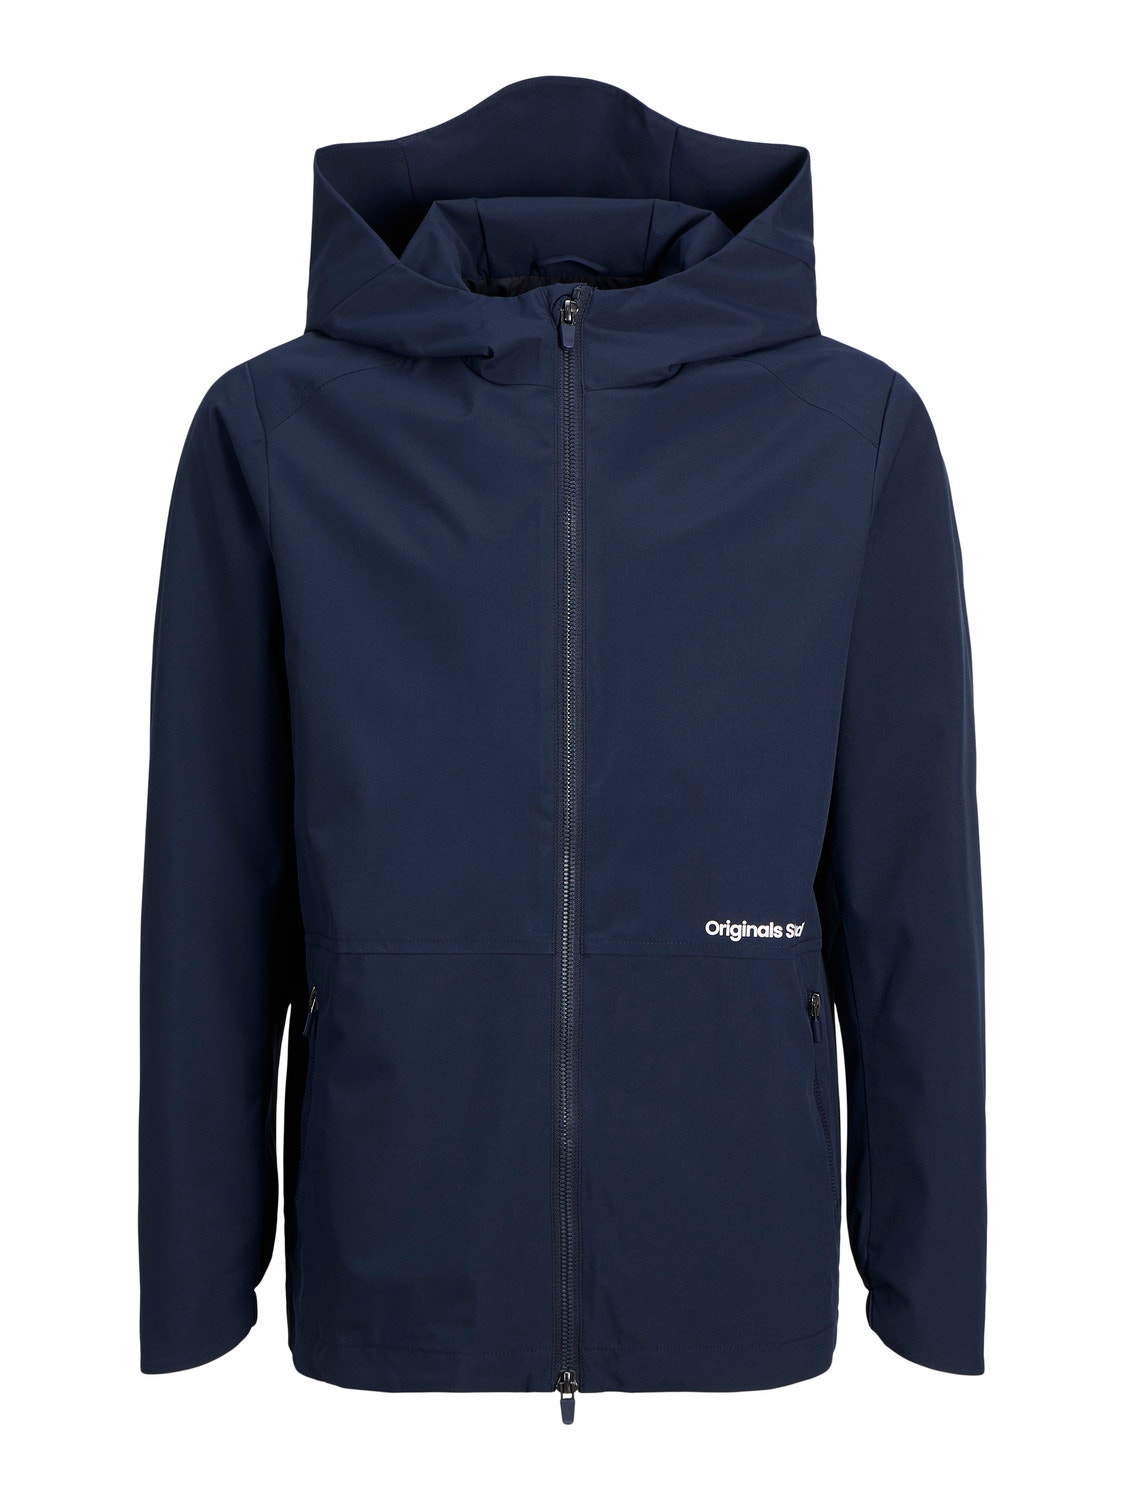 Jack & Jones Softshell jacket Mini -Navy Blazer - 12256125